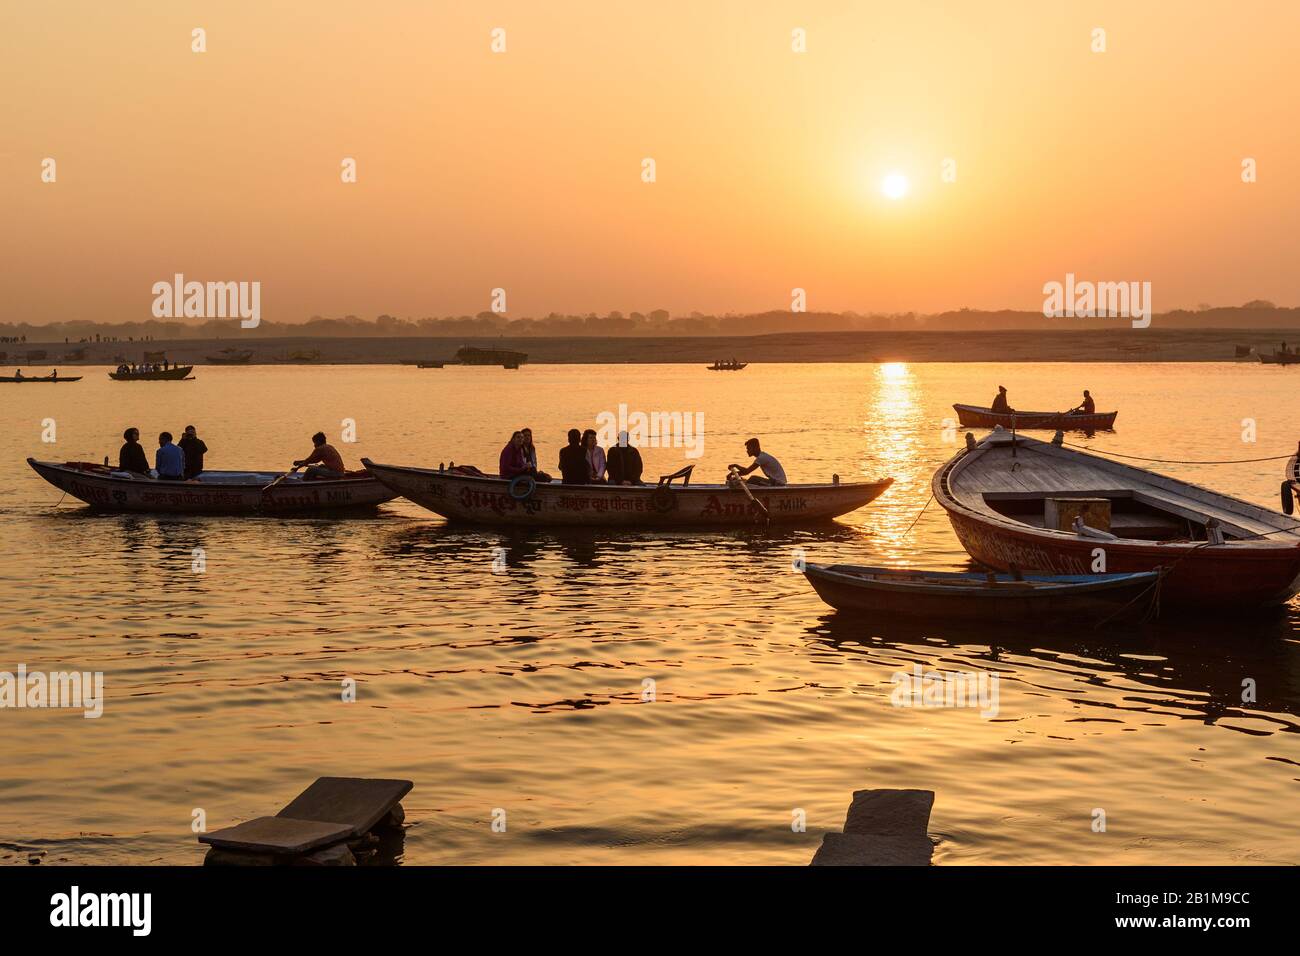 Bateaux avec des gens sur la rivière Ganga au lever du soleil à Varanasi. Inde Banque D'Images